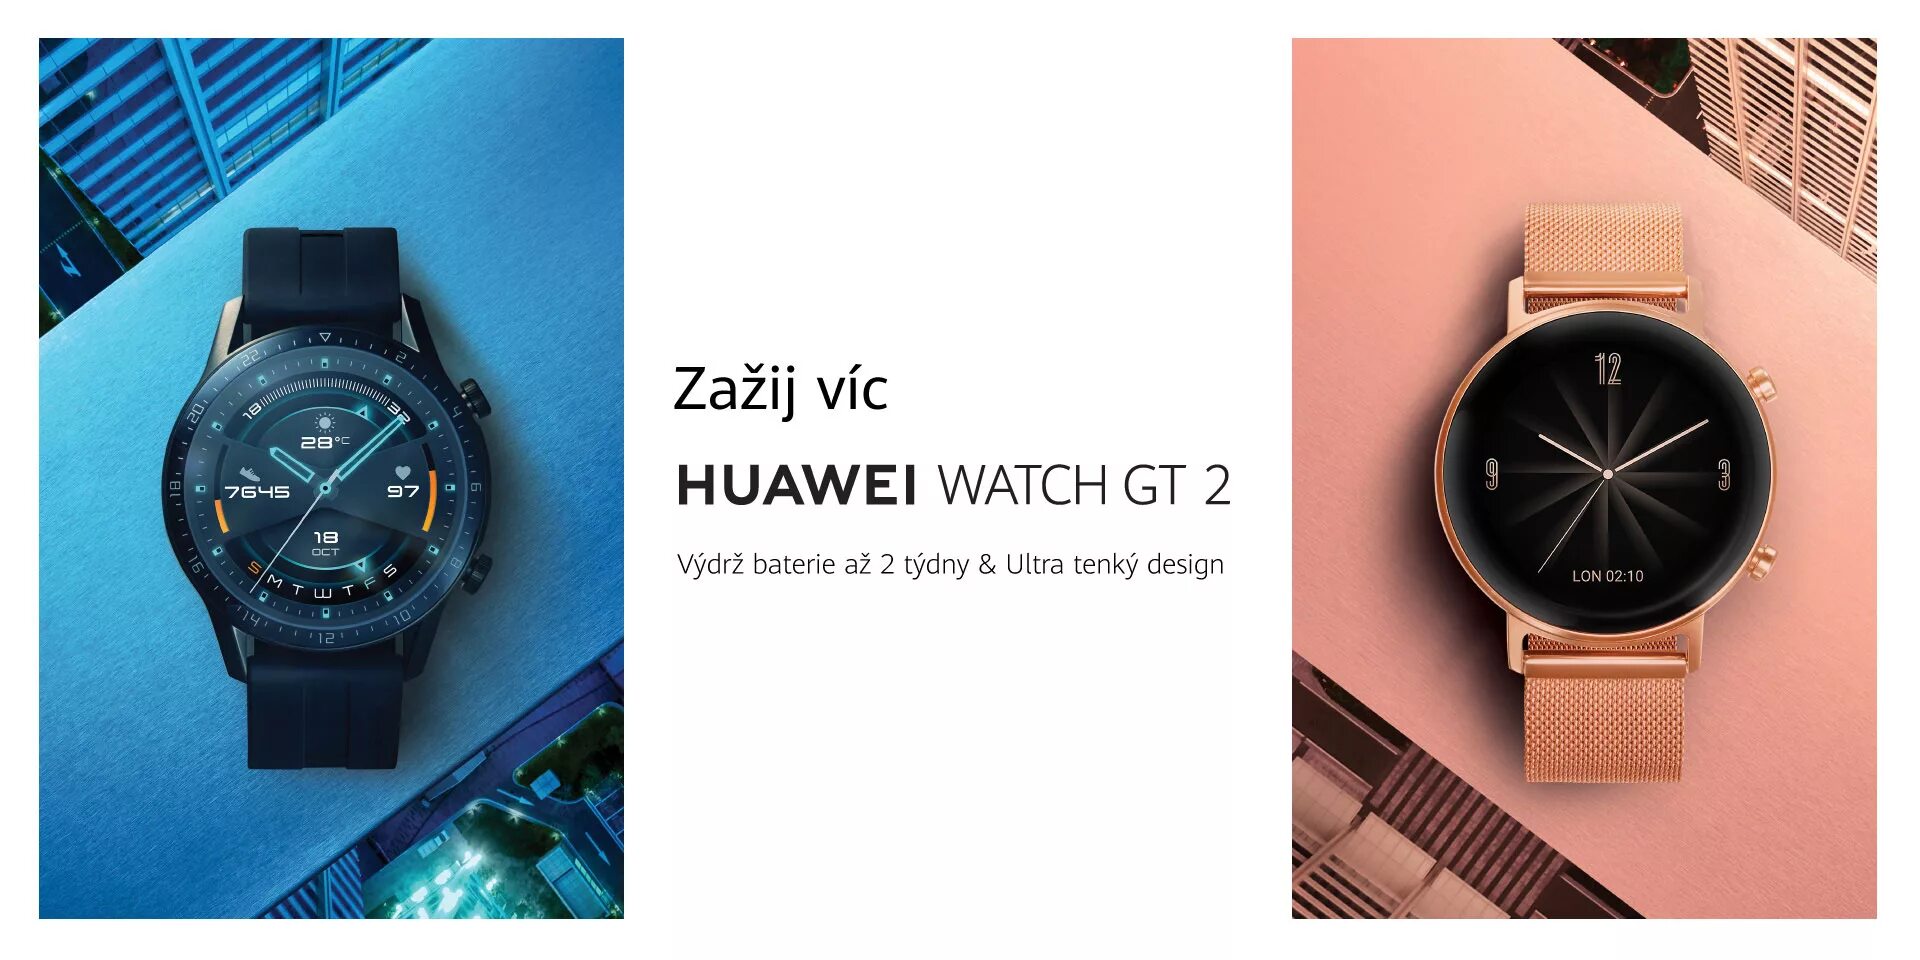 Huawei gt 3 gold ss. Смарт-часы Huawei gt 3 mil-b19 Gold SS высотомер. Смарт-часы Huawei gt 3 mil-b19 Gold SS / White Leather. Huawei watch Ultimate. Huawei watch gt2 42mm розовое золото.